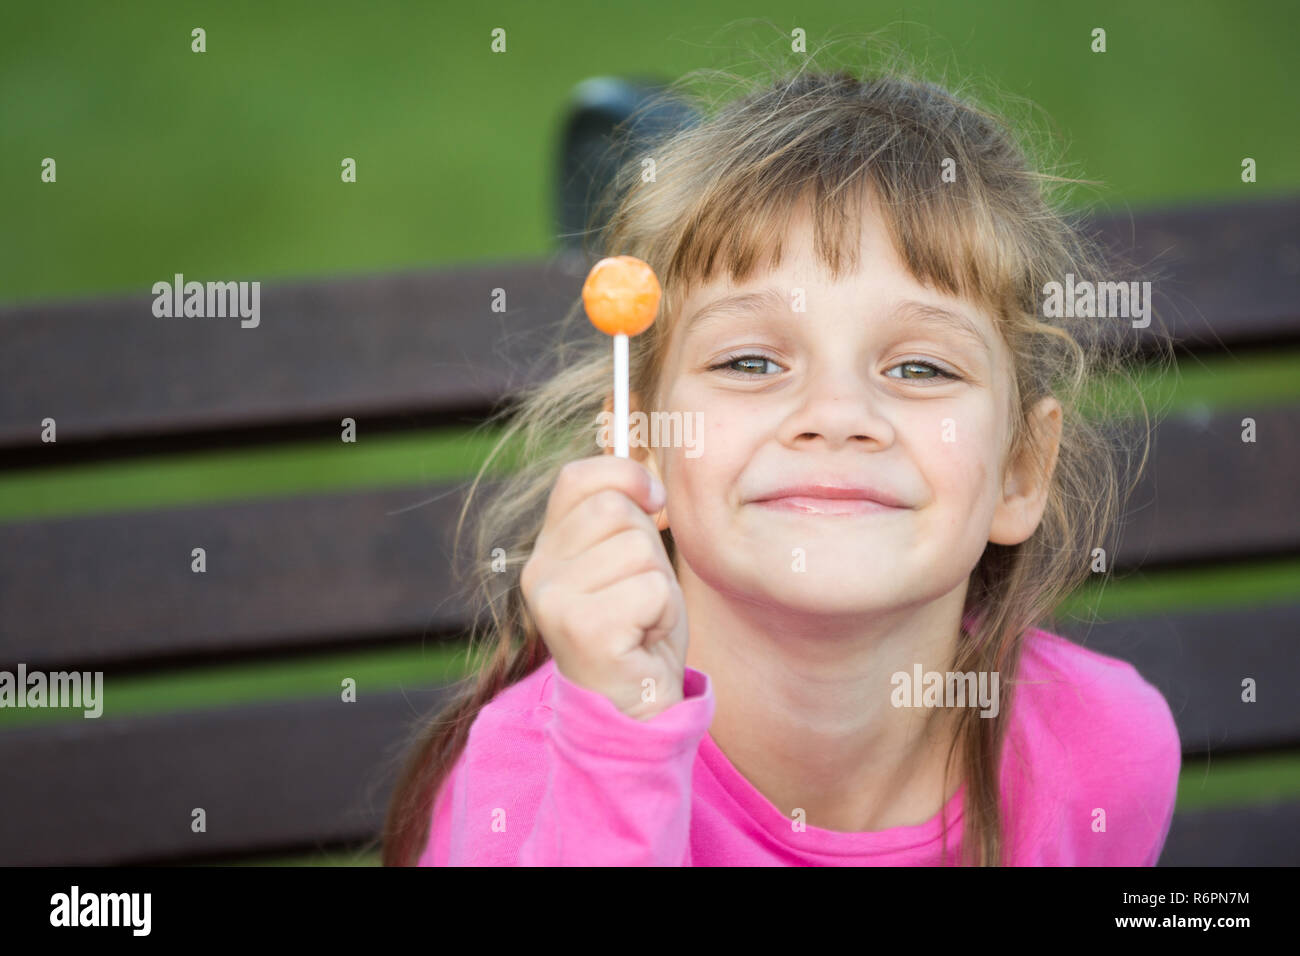 Portrait d'un six-année-vieille fille joyeuse qui est titulaire d'une sucette dans sa main et se félicite de la trame Banque D'Images